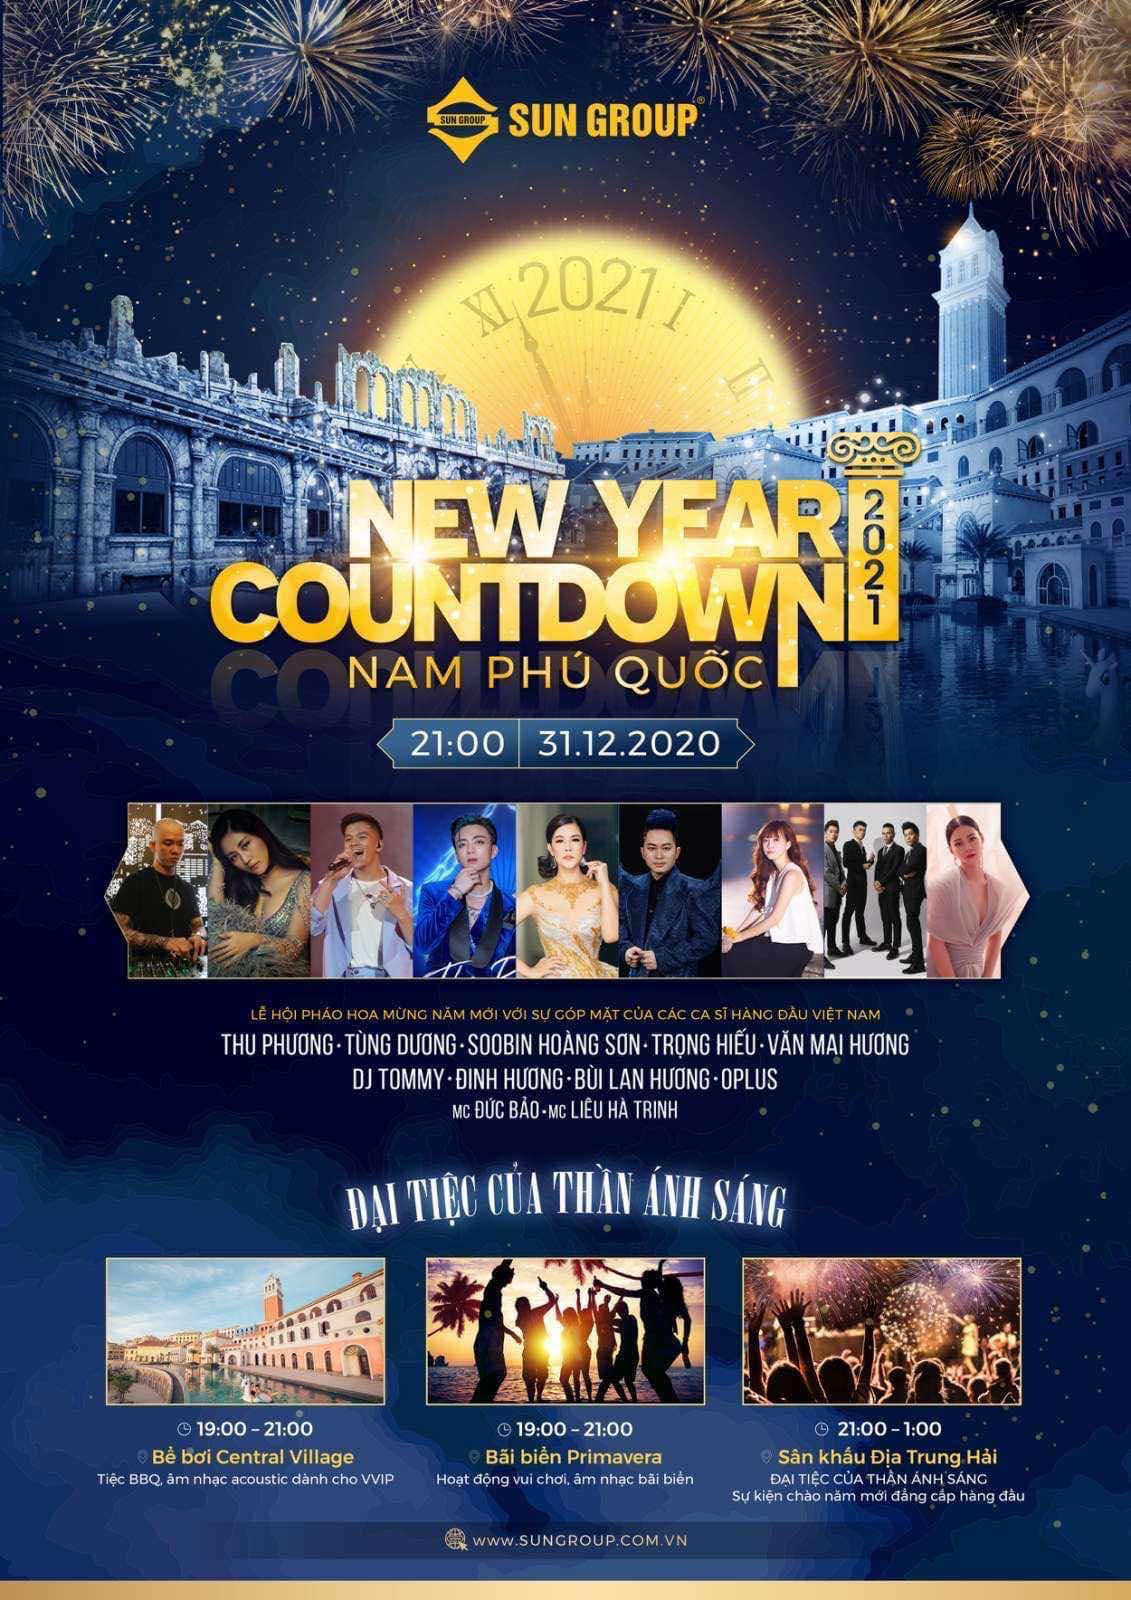 Dàn sao Việt quy tụ trong đêm New Year countdown 2021 tại Nam Phú Quốc - Ảnh 2.